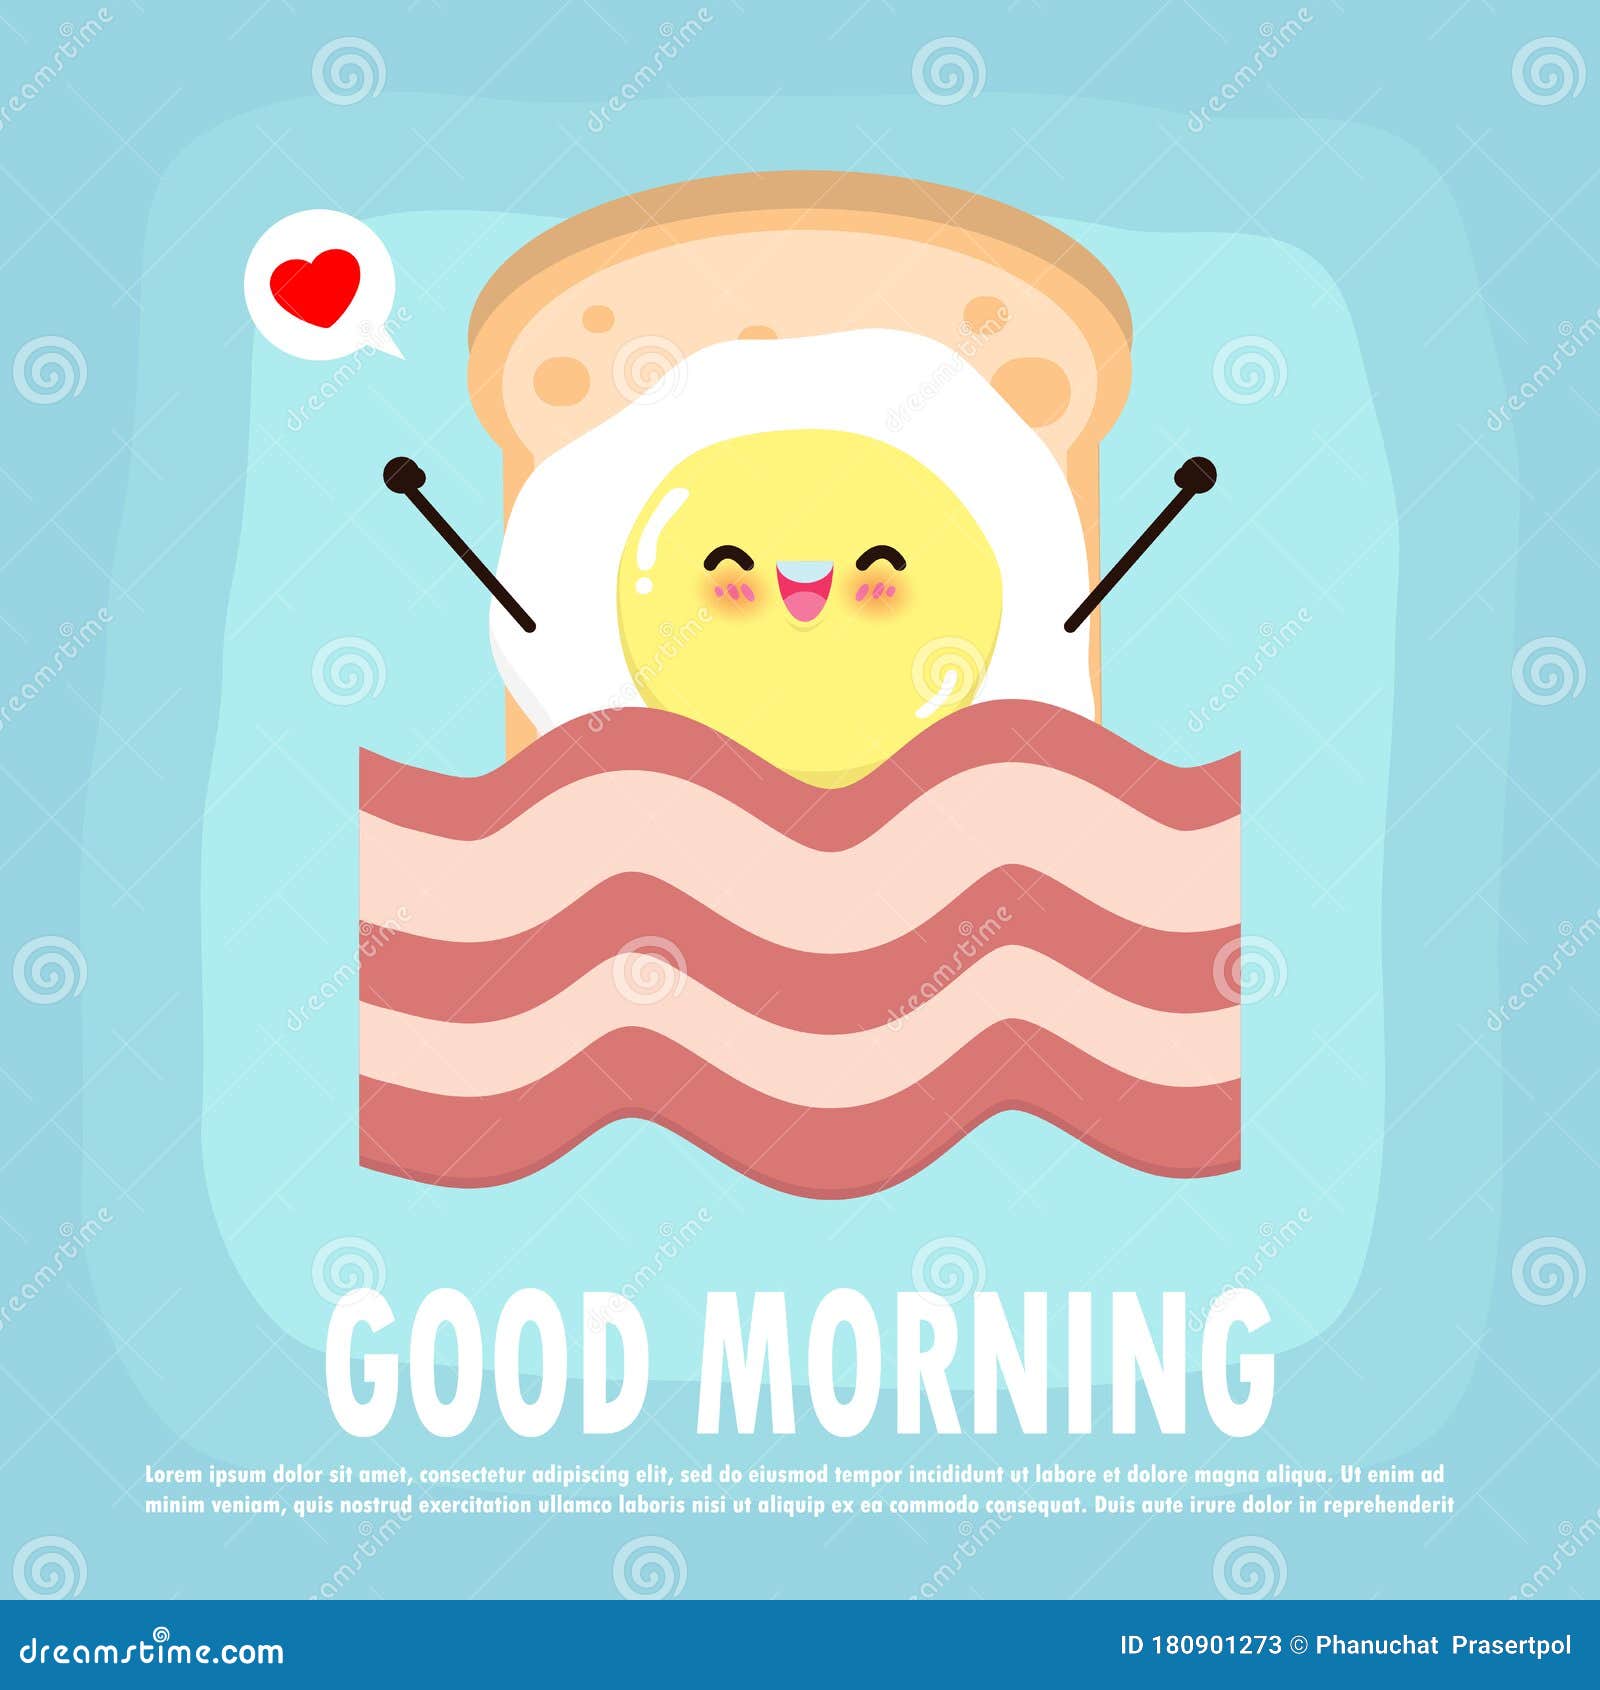 早安，早餐很重要！ 今天时面包鸡蛋玉米蜂蜜柚子_neko酱酱酱_2020年04月16日_微头条-今日头条